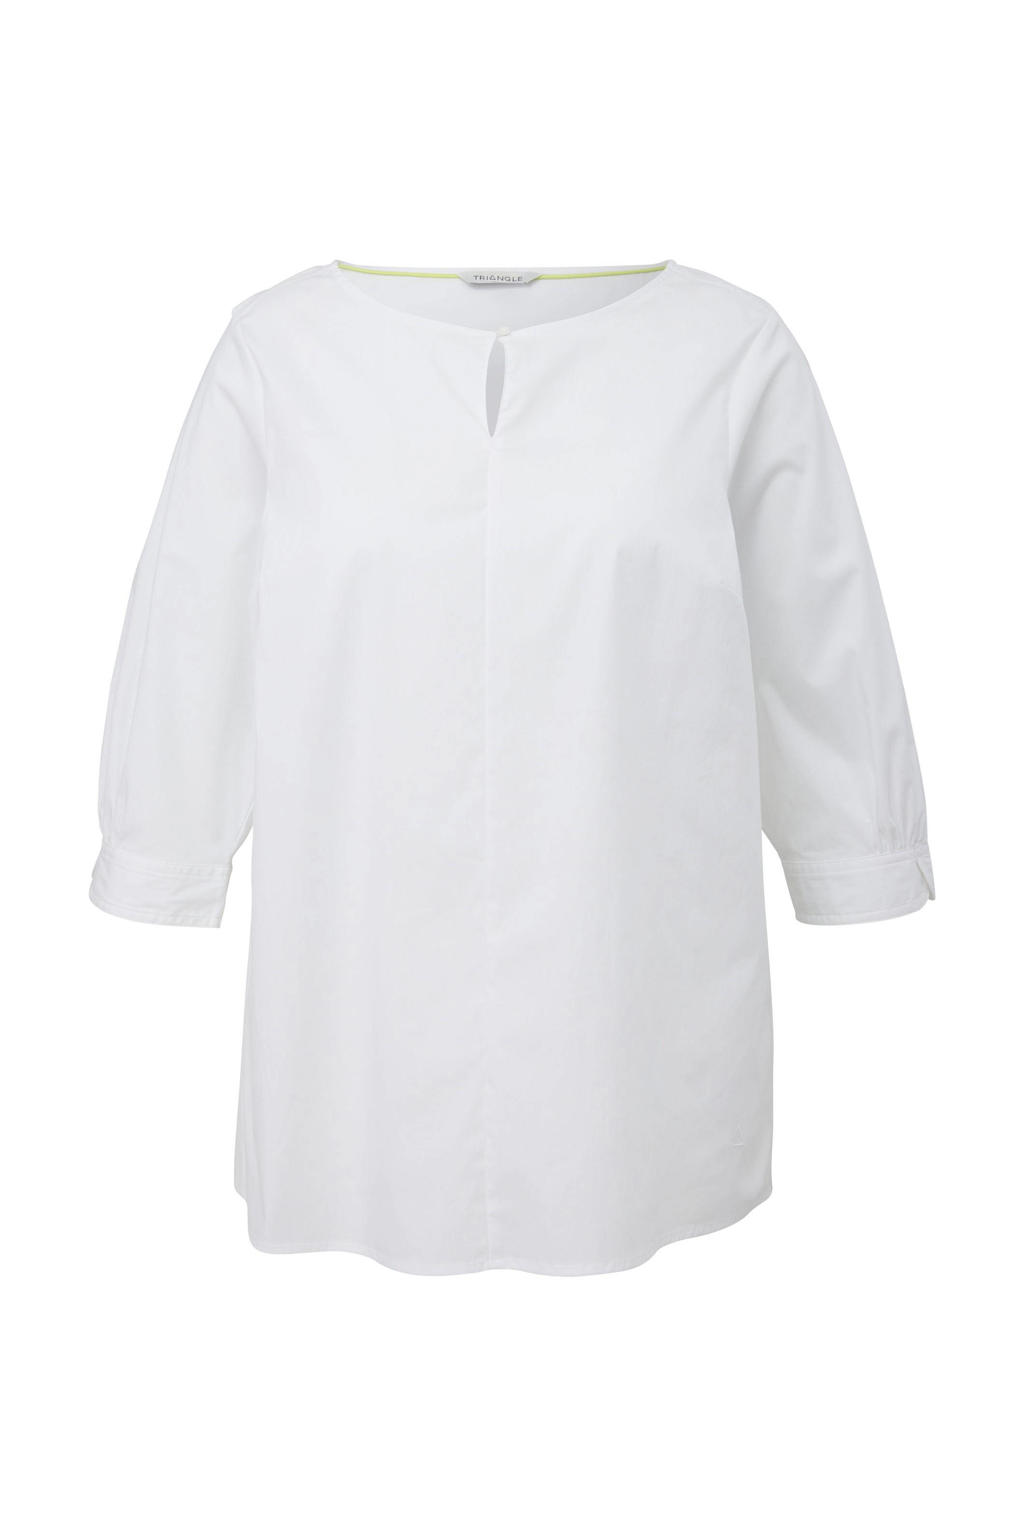 Witte dames TRIANGLE top van polyester met driekwart mouwen en ronde hals